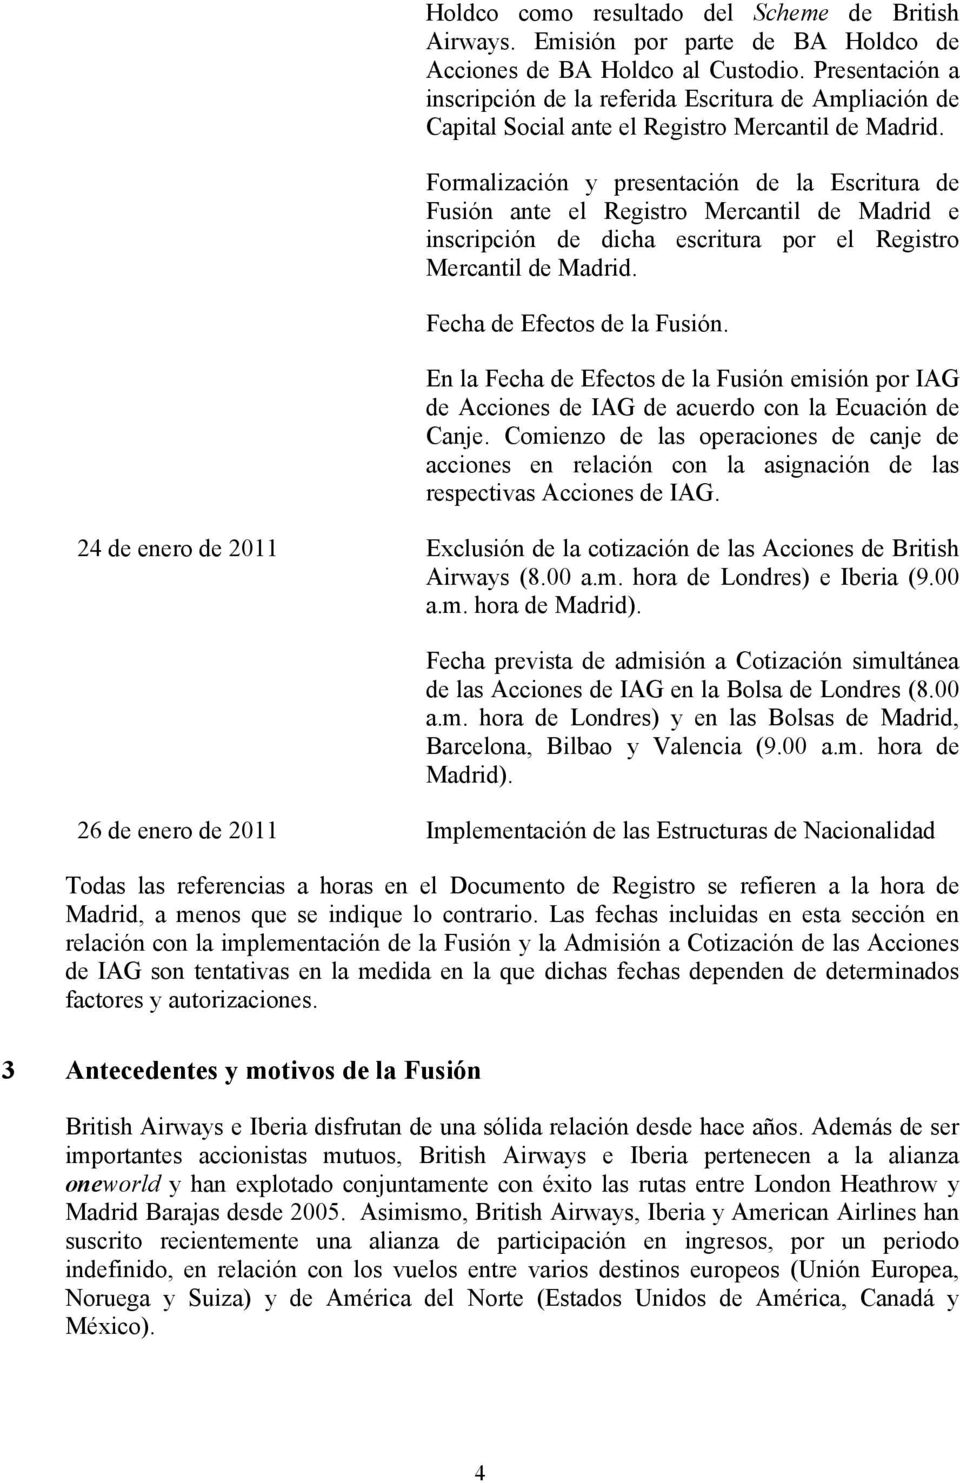 Formalización y presentación de la Escritura de Fusión ante el Registro Mercantil de Madrid e inscripción de dicha escritura por el Registro Mercantil de Madrid. Fecha de Efectos de la Fusión.